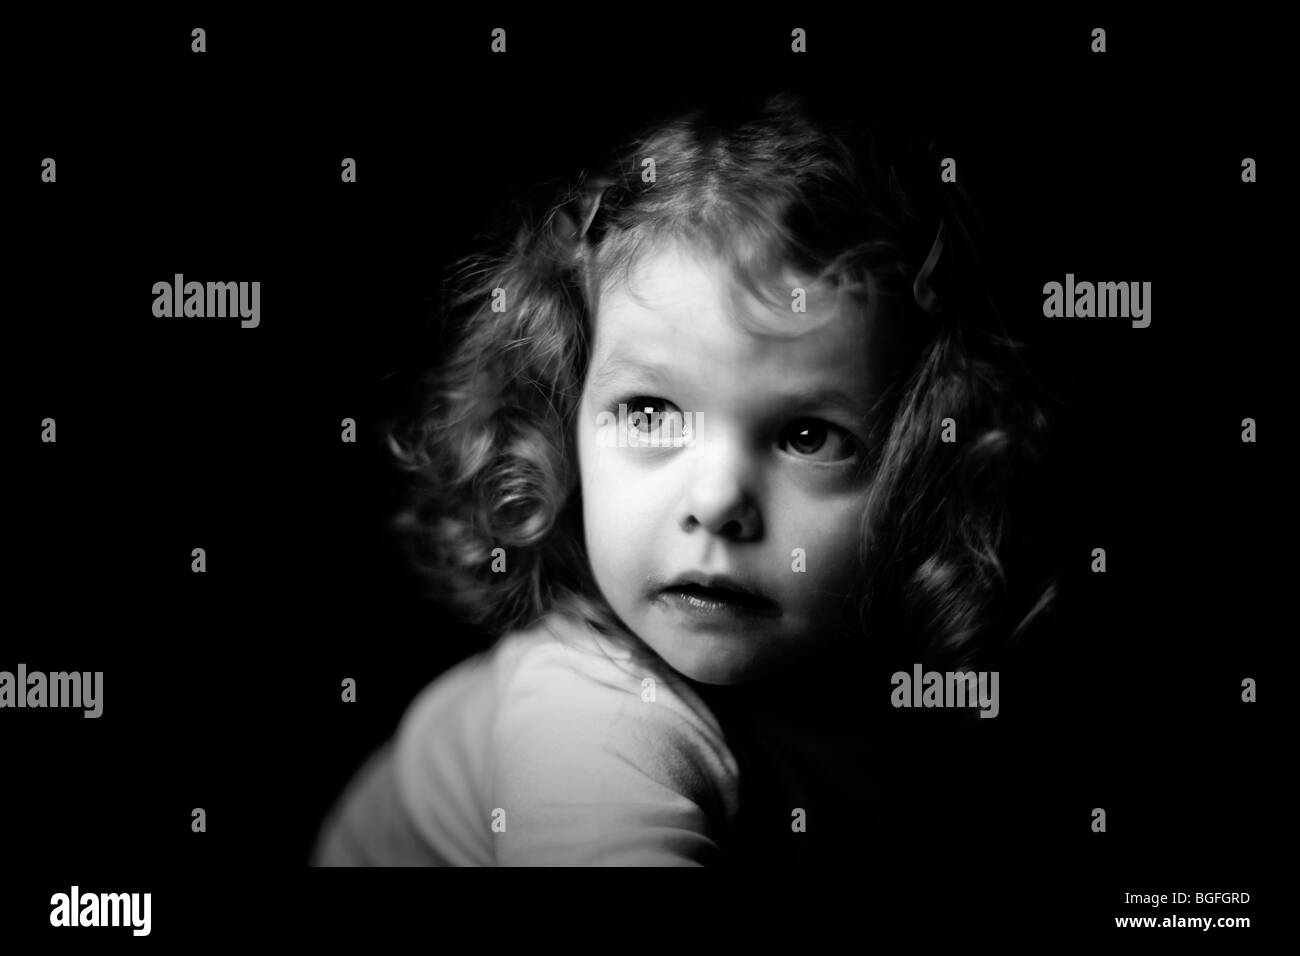 Photo en noir et blanc d'une fillette de trois ans dans l'éclairage dramatique. Fond noir. Banque D'Images